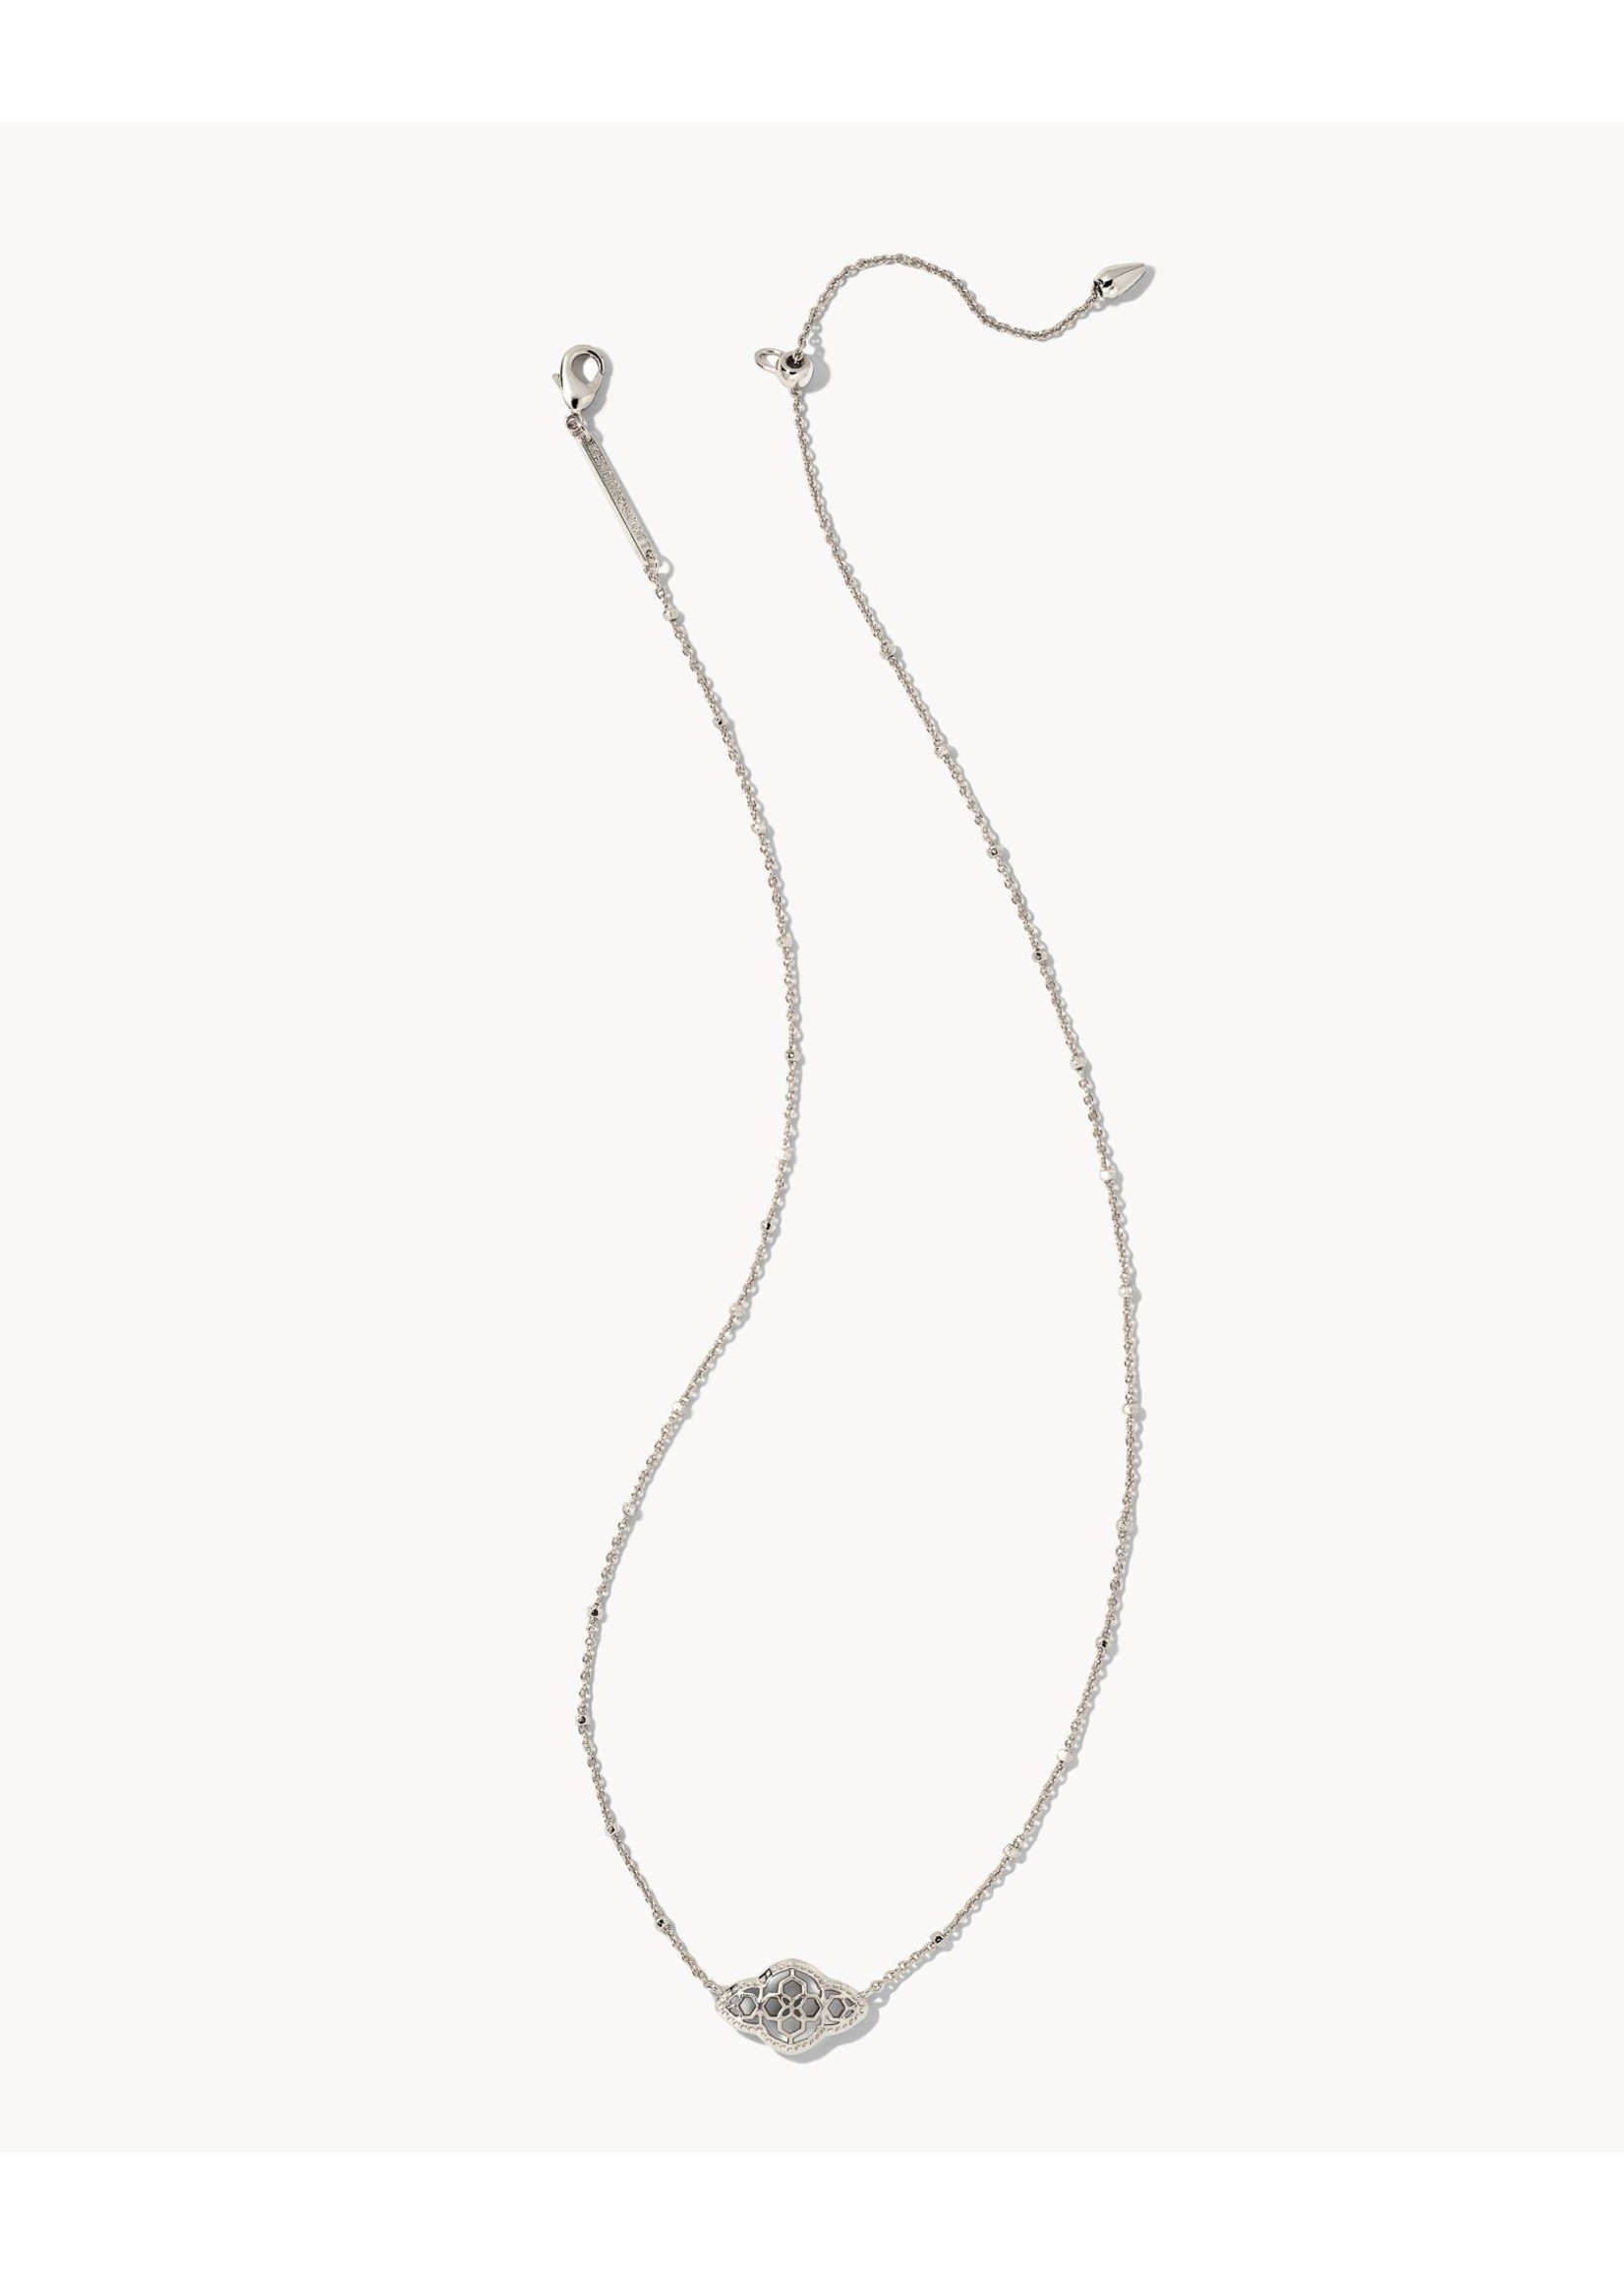 The Abbie Pendant Necklace